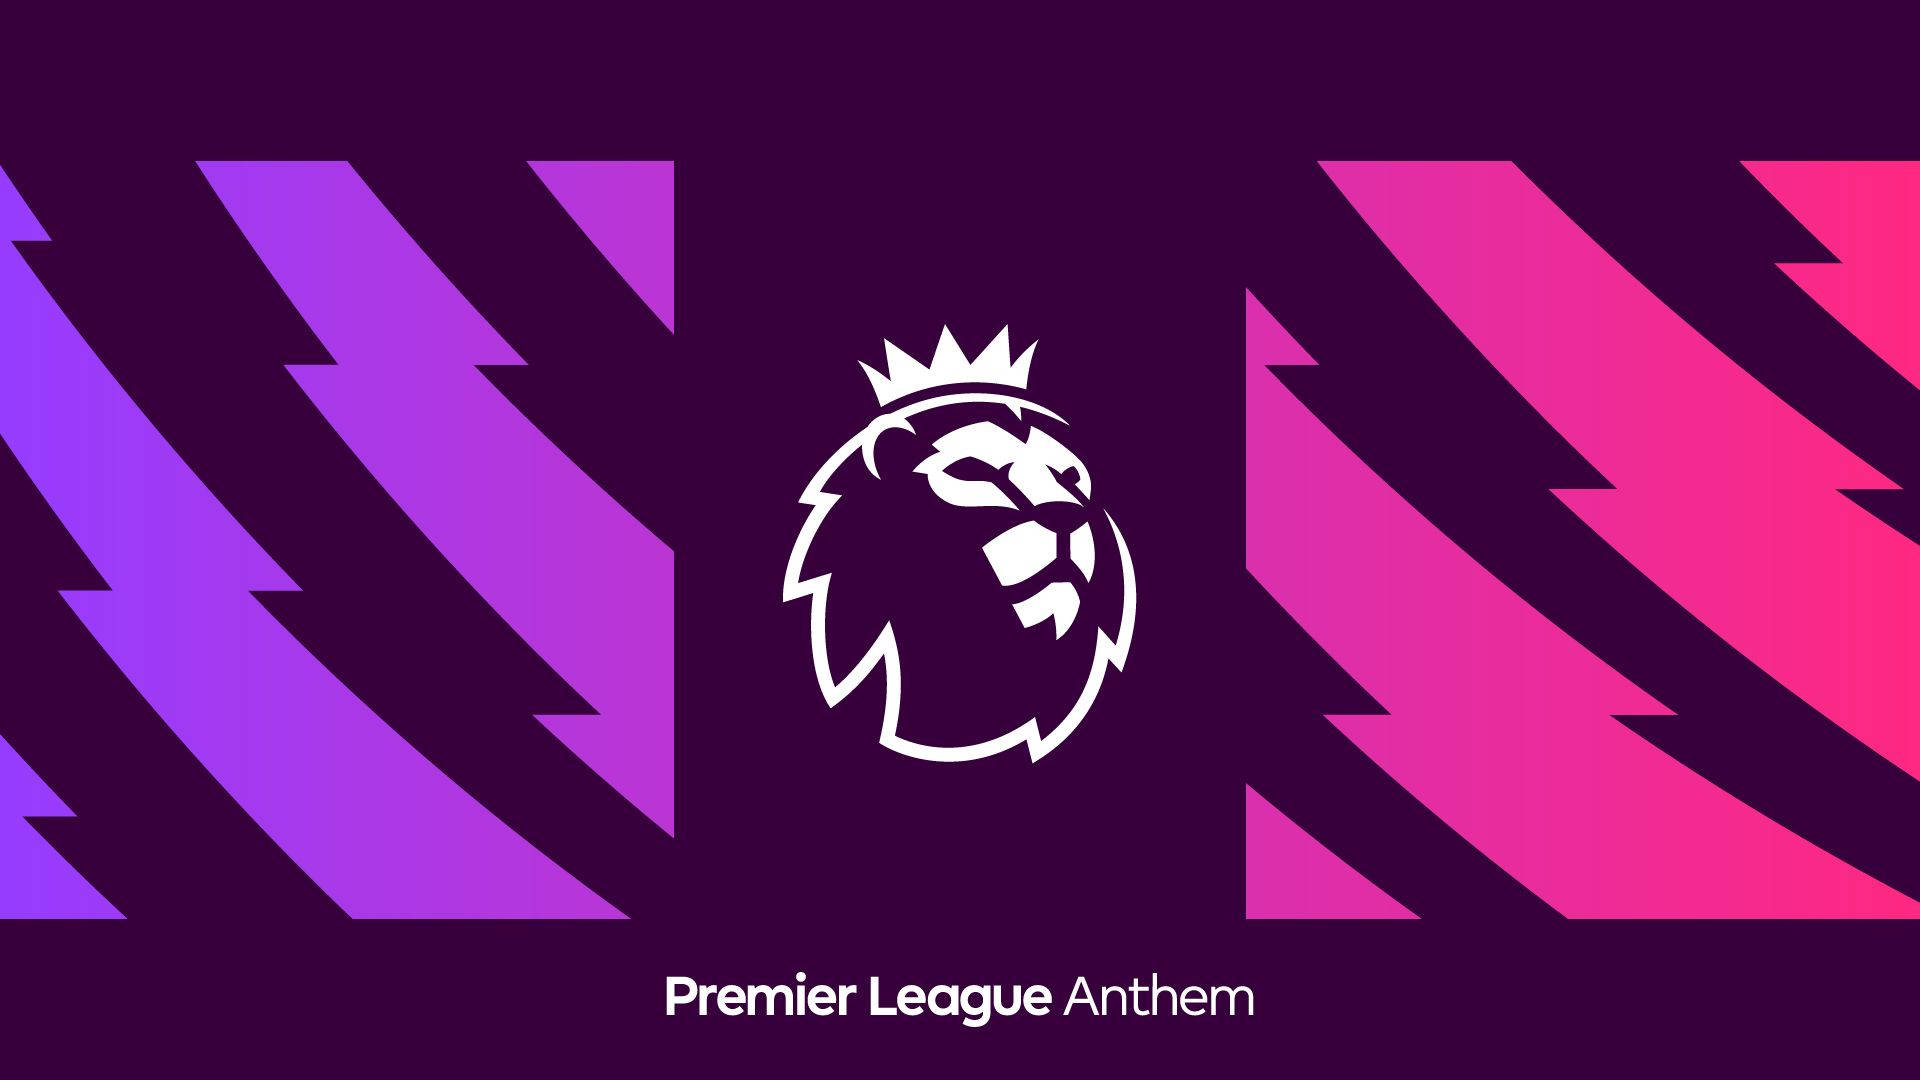 Premier League Lion With Crown Wallpaper